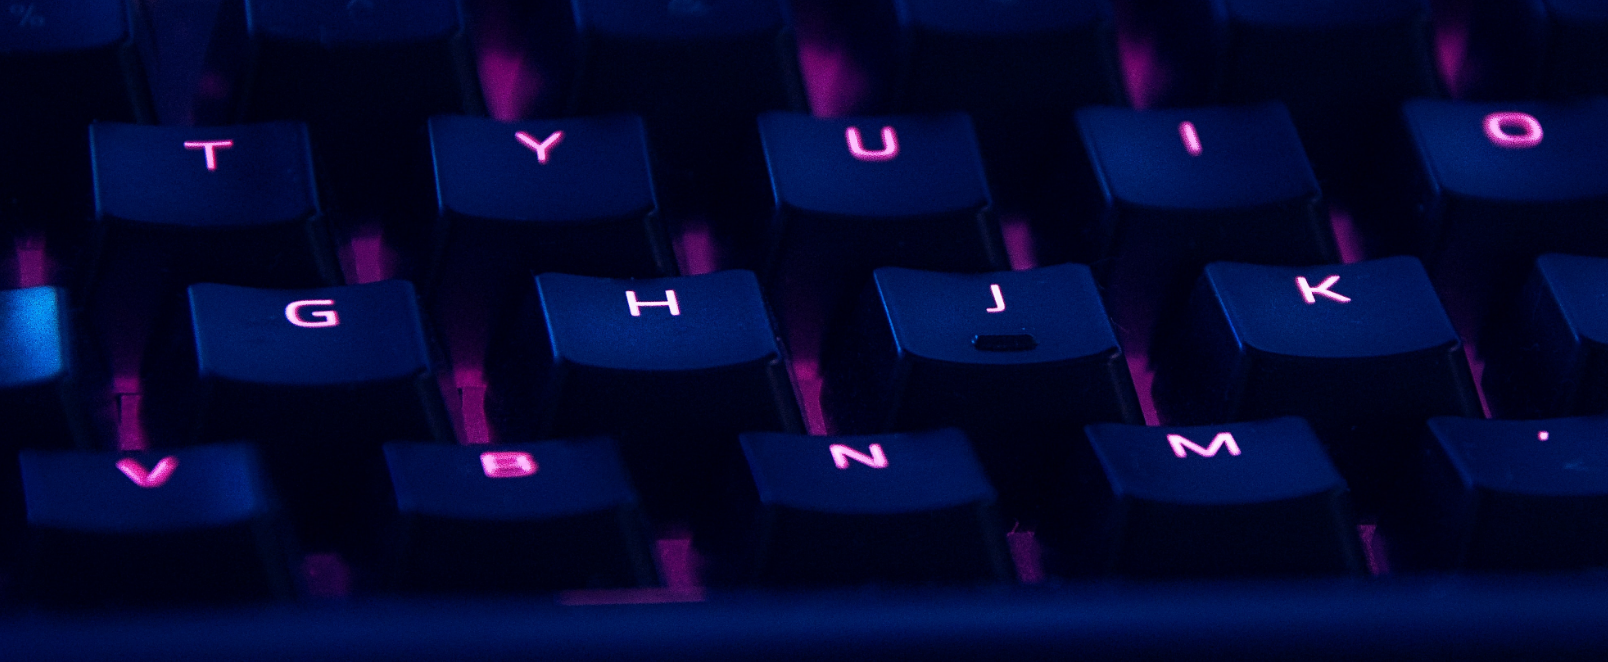 keyboard in purple light